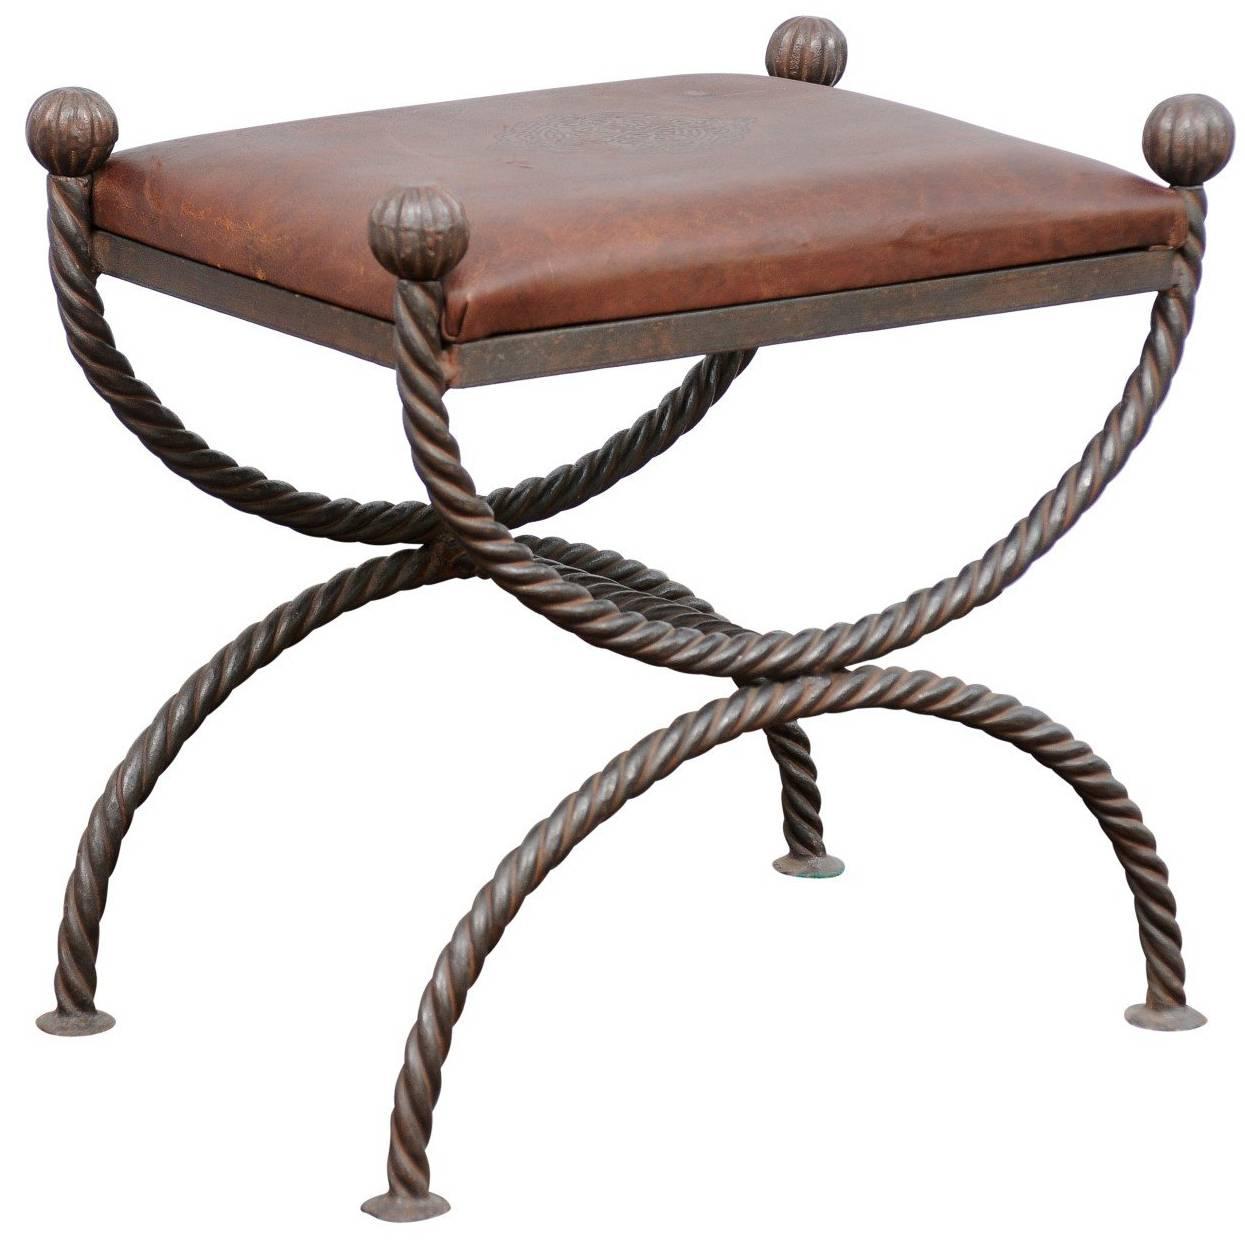 Tabouret anglais de style curule moderne du milieu du siècle dernier, avec assise en cuir et base en fer